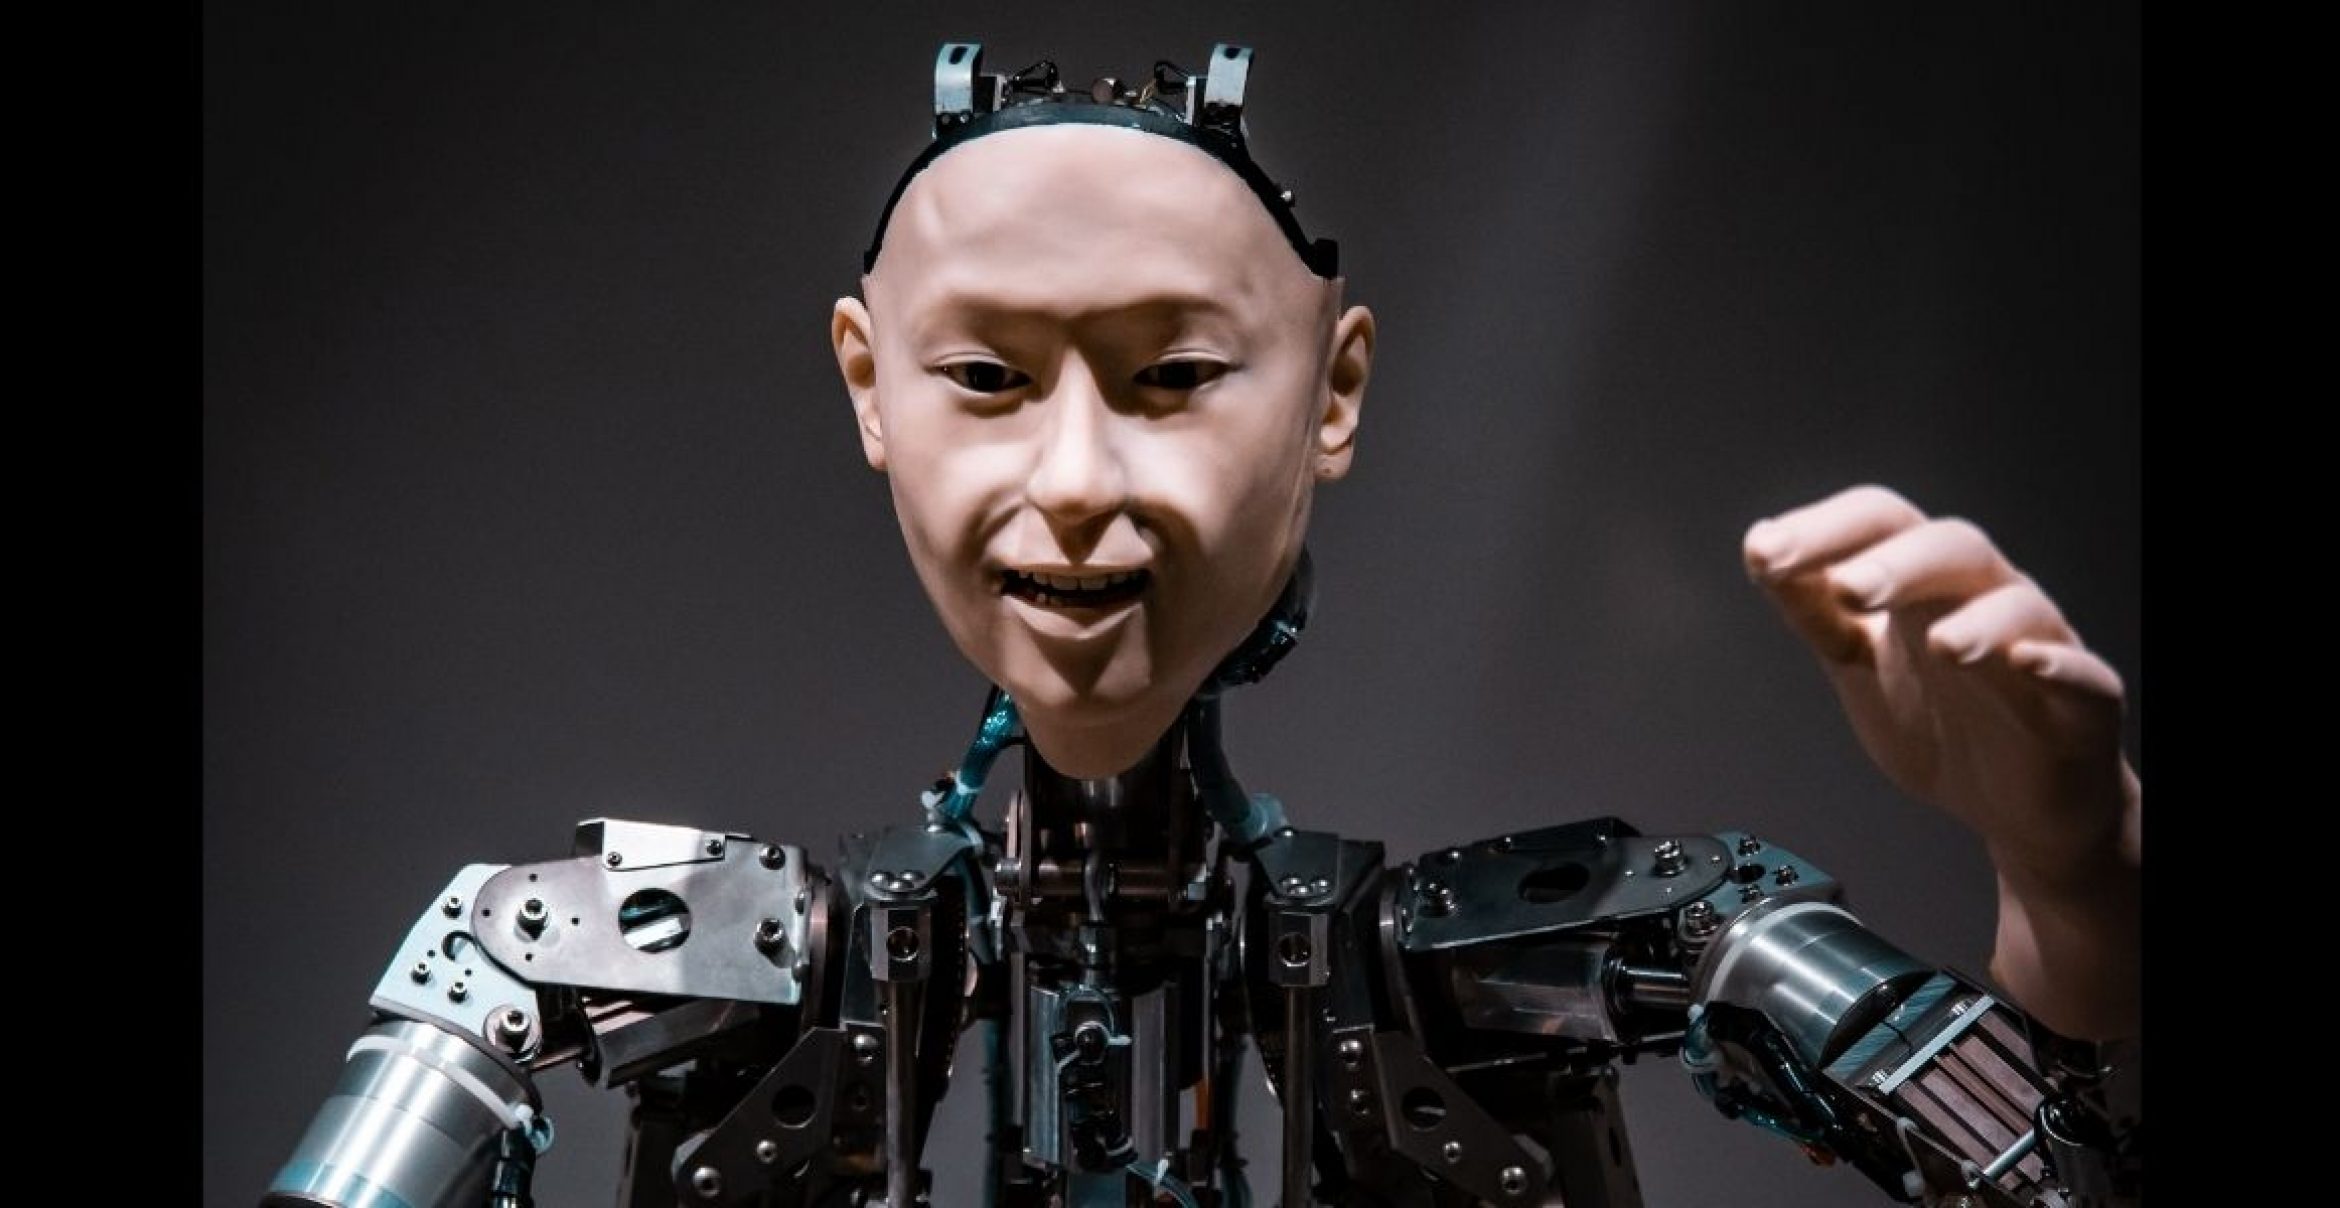 Unternehmen sucht „freundliches Gesicht“ für Roboter gegen Bezahlung